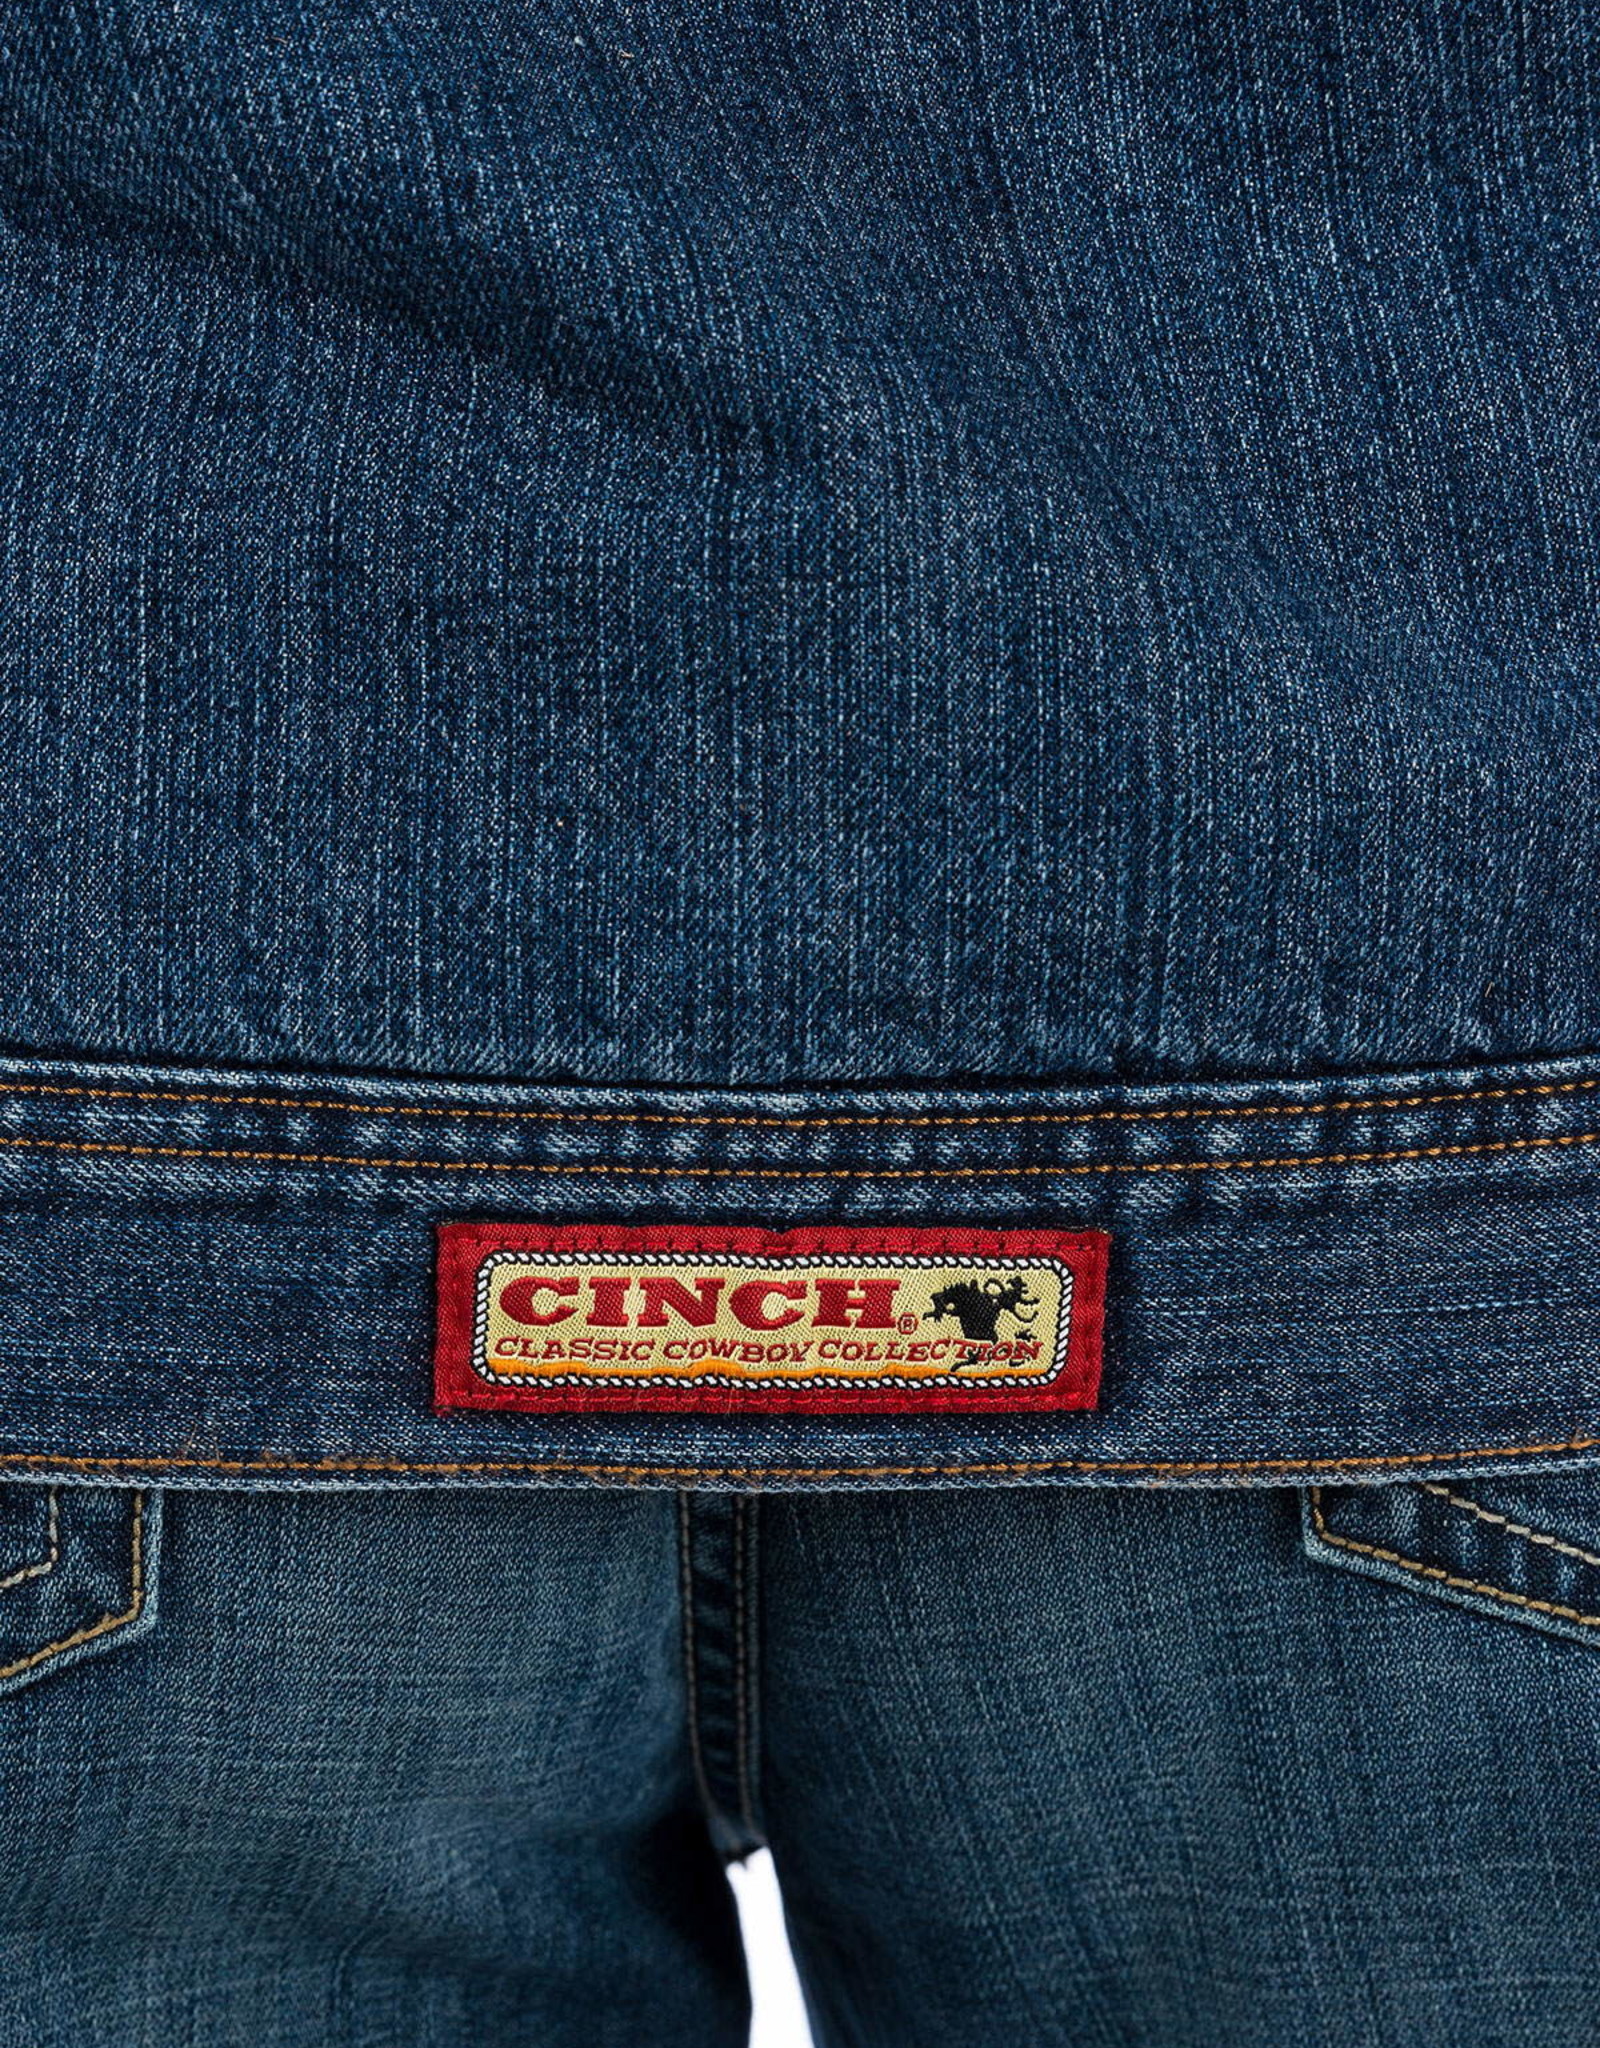 cinch concealed carry denim jacket